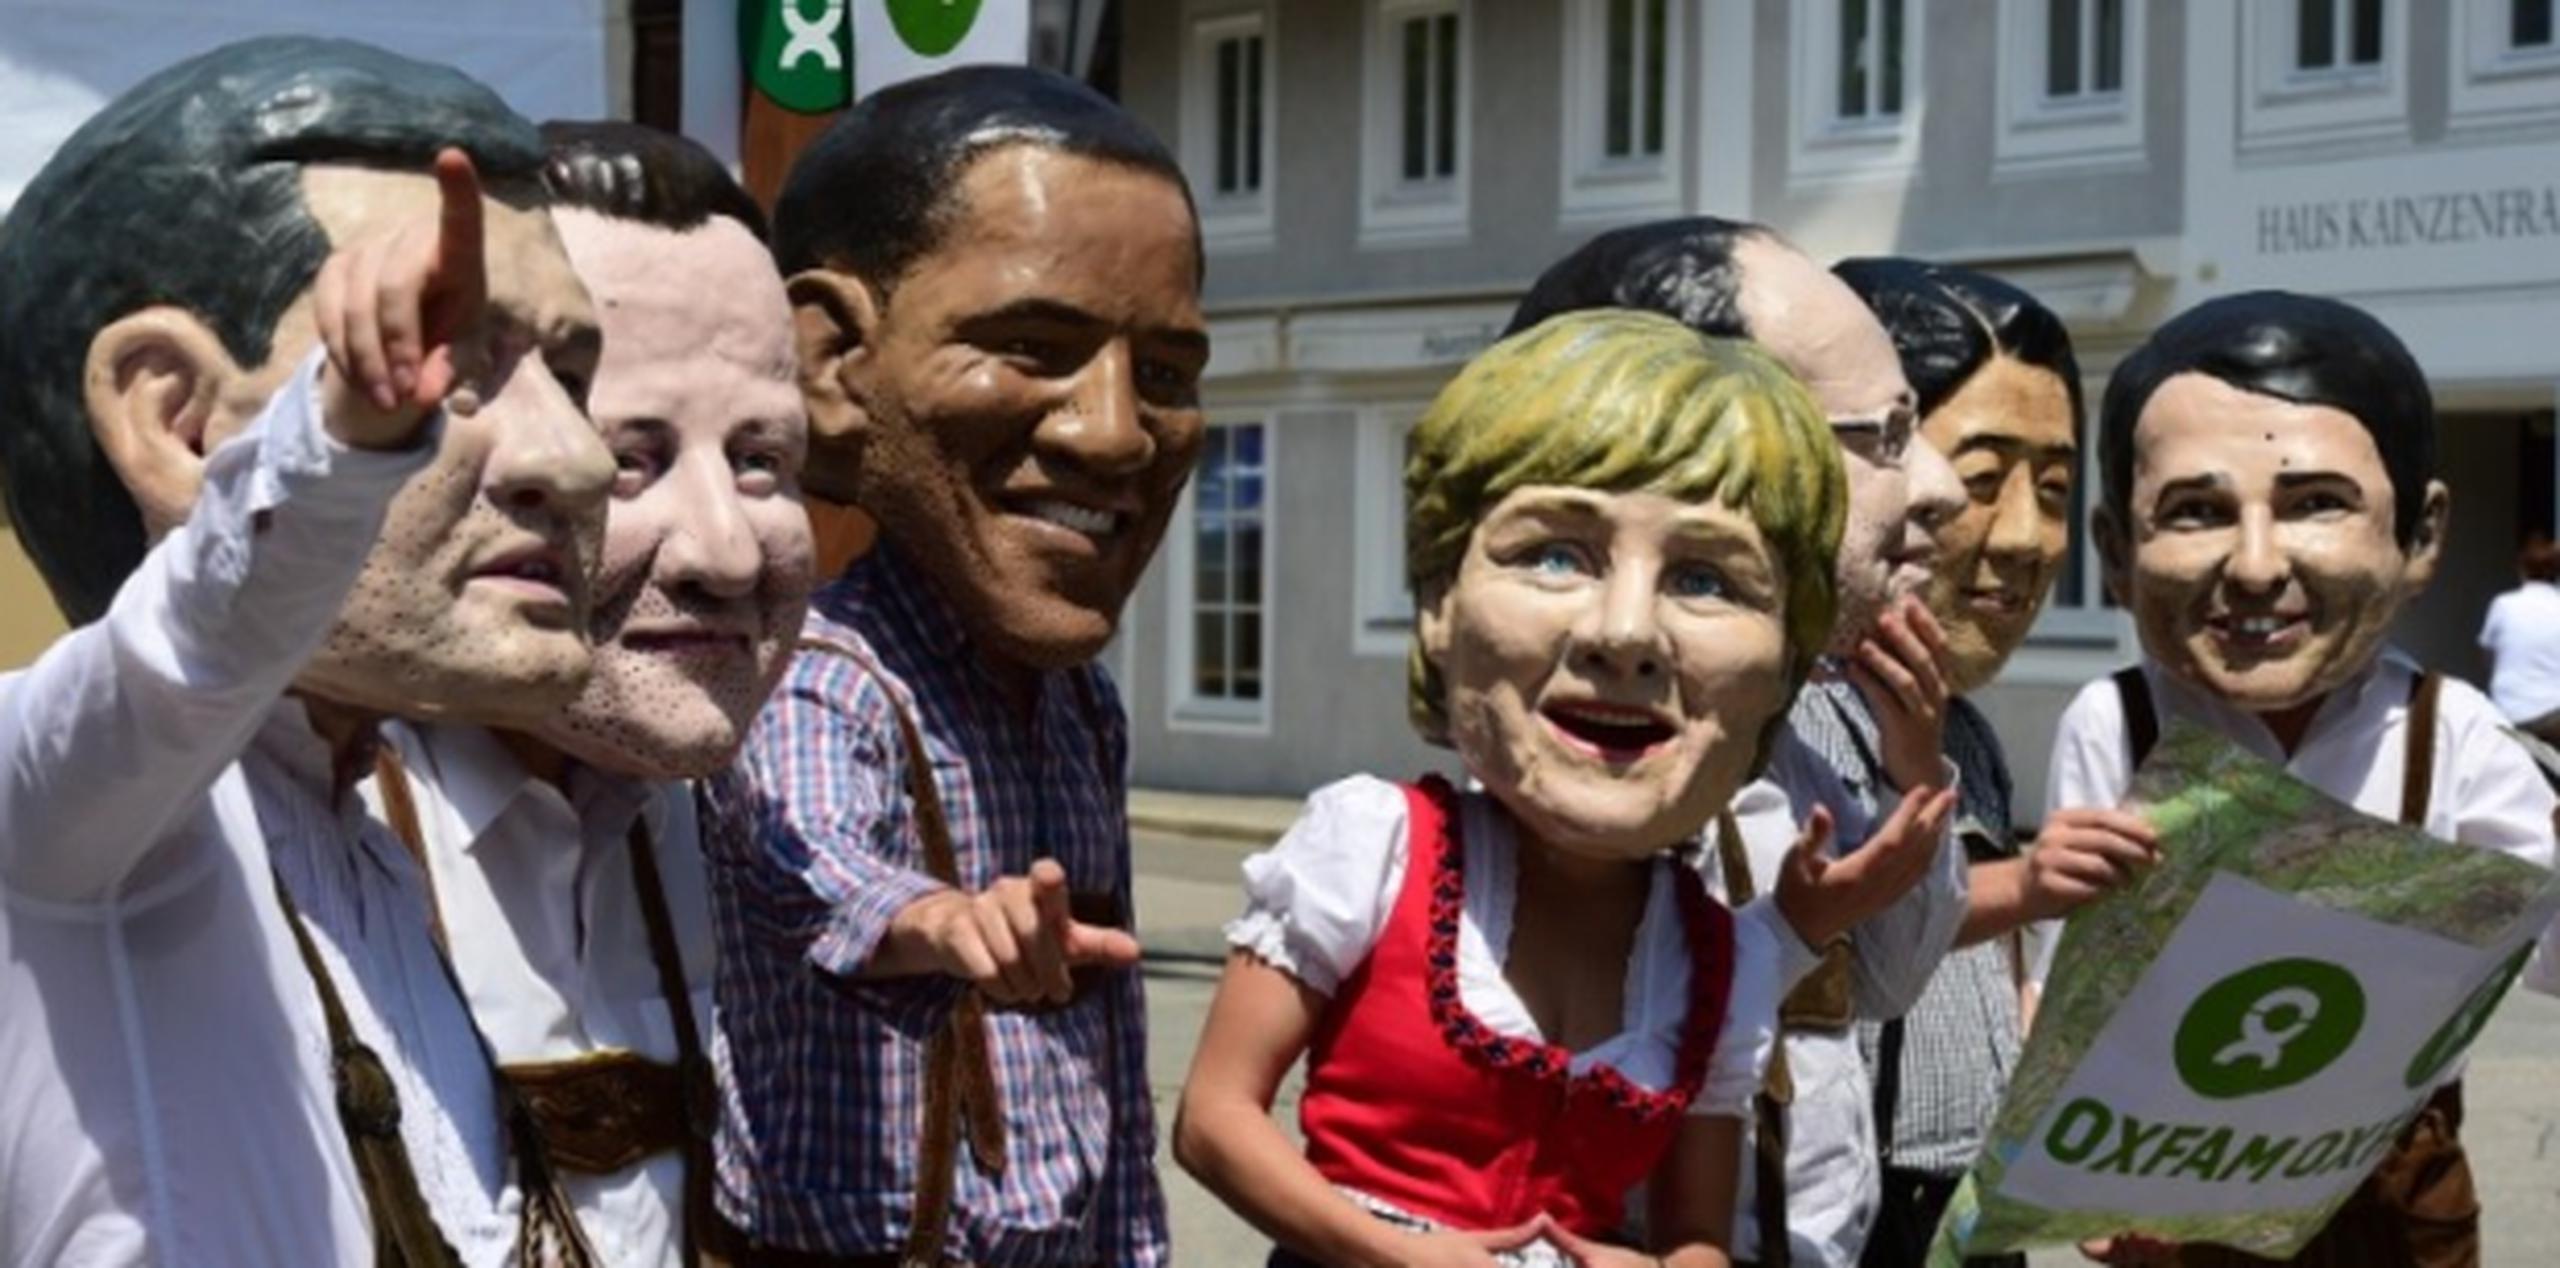 En la foto, protesta de integrantes de una organización sin fines de lucro, Oxfam, previo al encuentro del G7 en Alemania. (AFP)